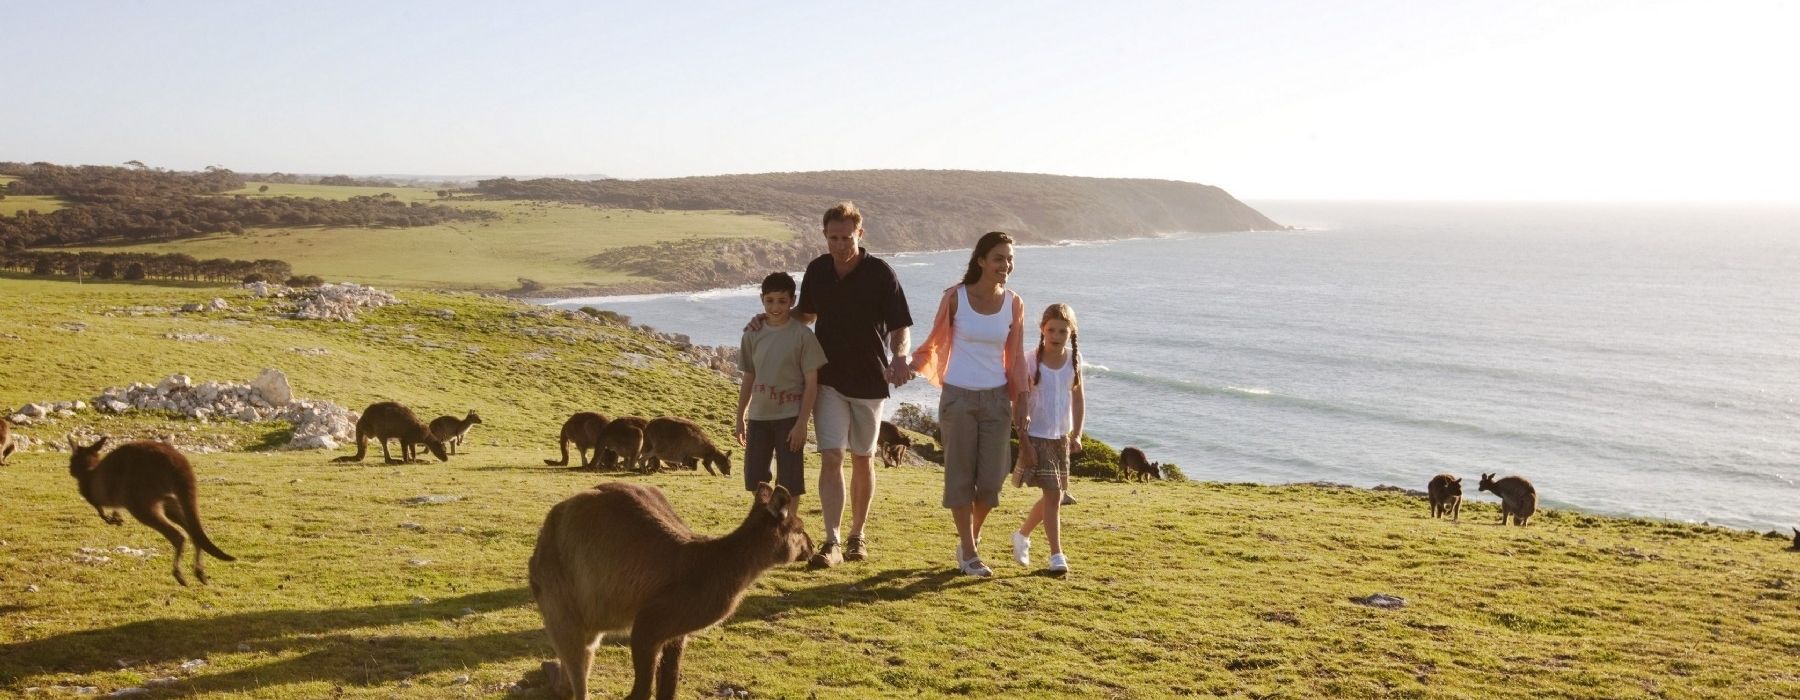 australia family travel blog